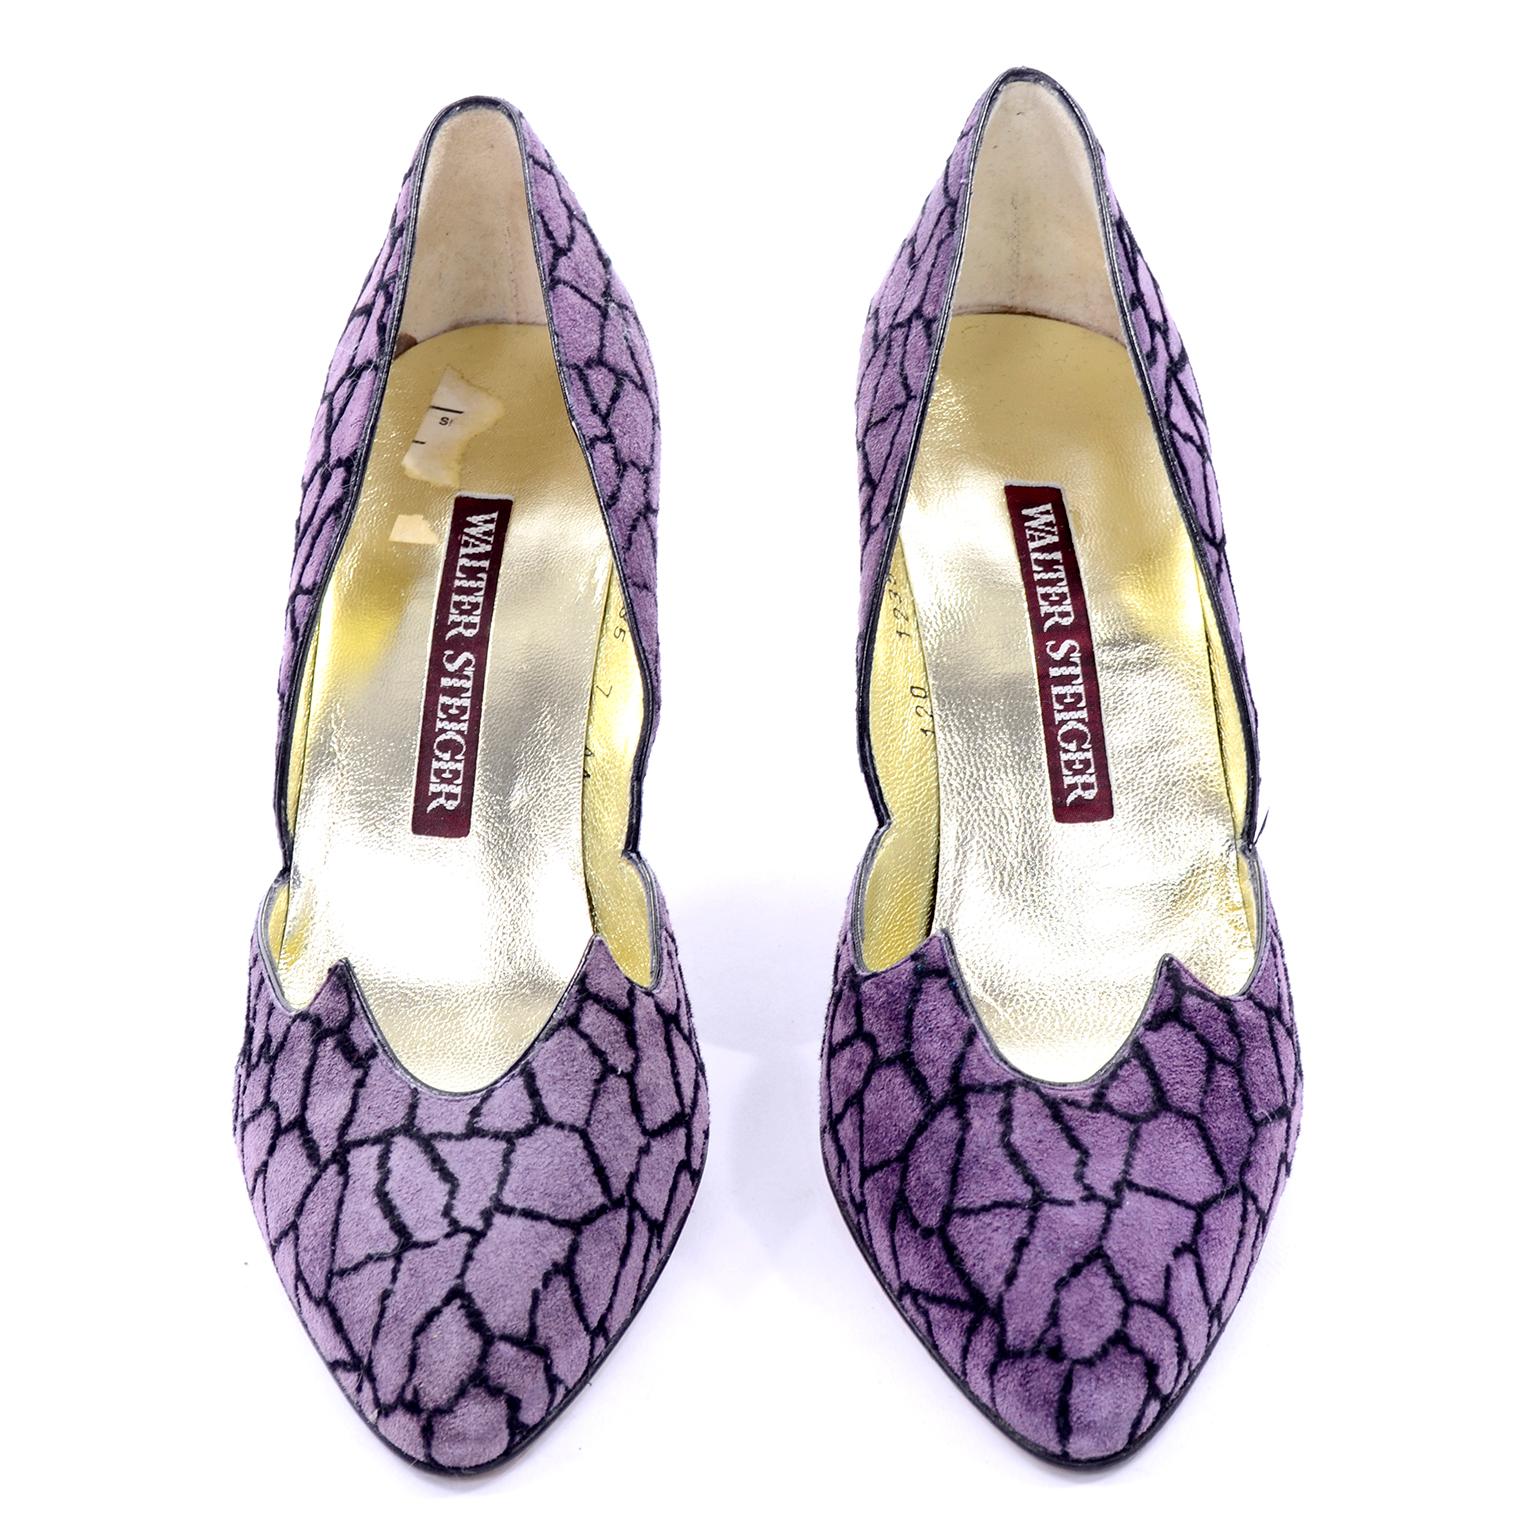 Nous sommes obsédés par les chaussures vintage de Walter Steiger !  Ces talons en daim violet ont une empeigne spectaculaire avec des découpes nettes et un motif de girafe ou de galet abstrait noir. Taille 7AA. Fabriquées en Italie. Jamais porté !